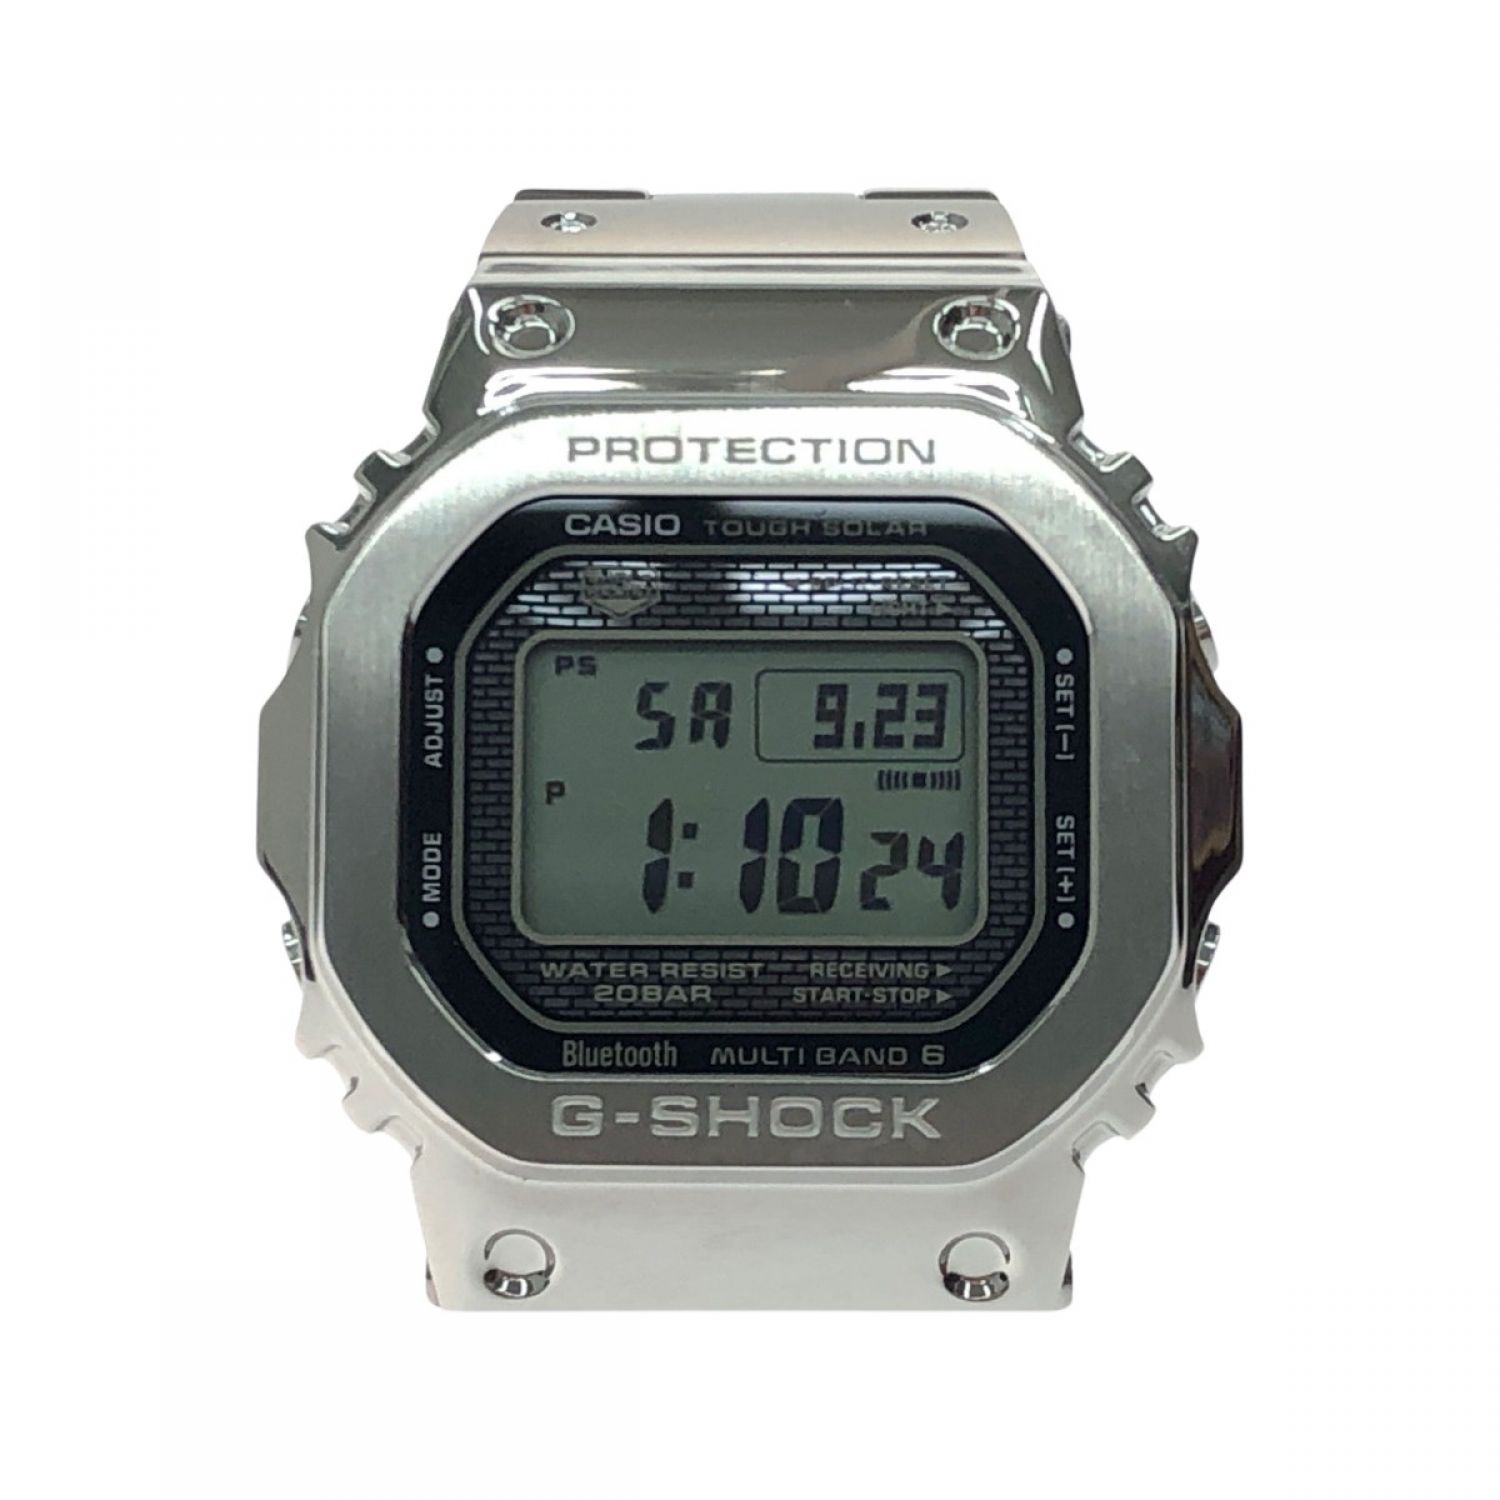 G-SHOCK 腕時計 GMW-B5000 電波ソーラー デジタル ウォッチ